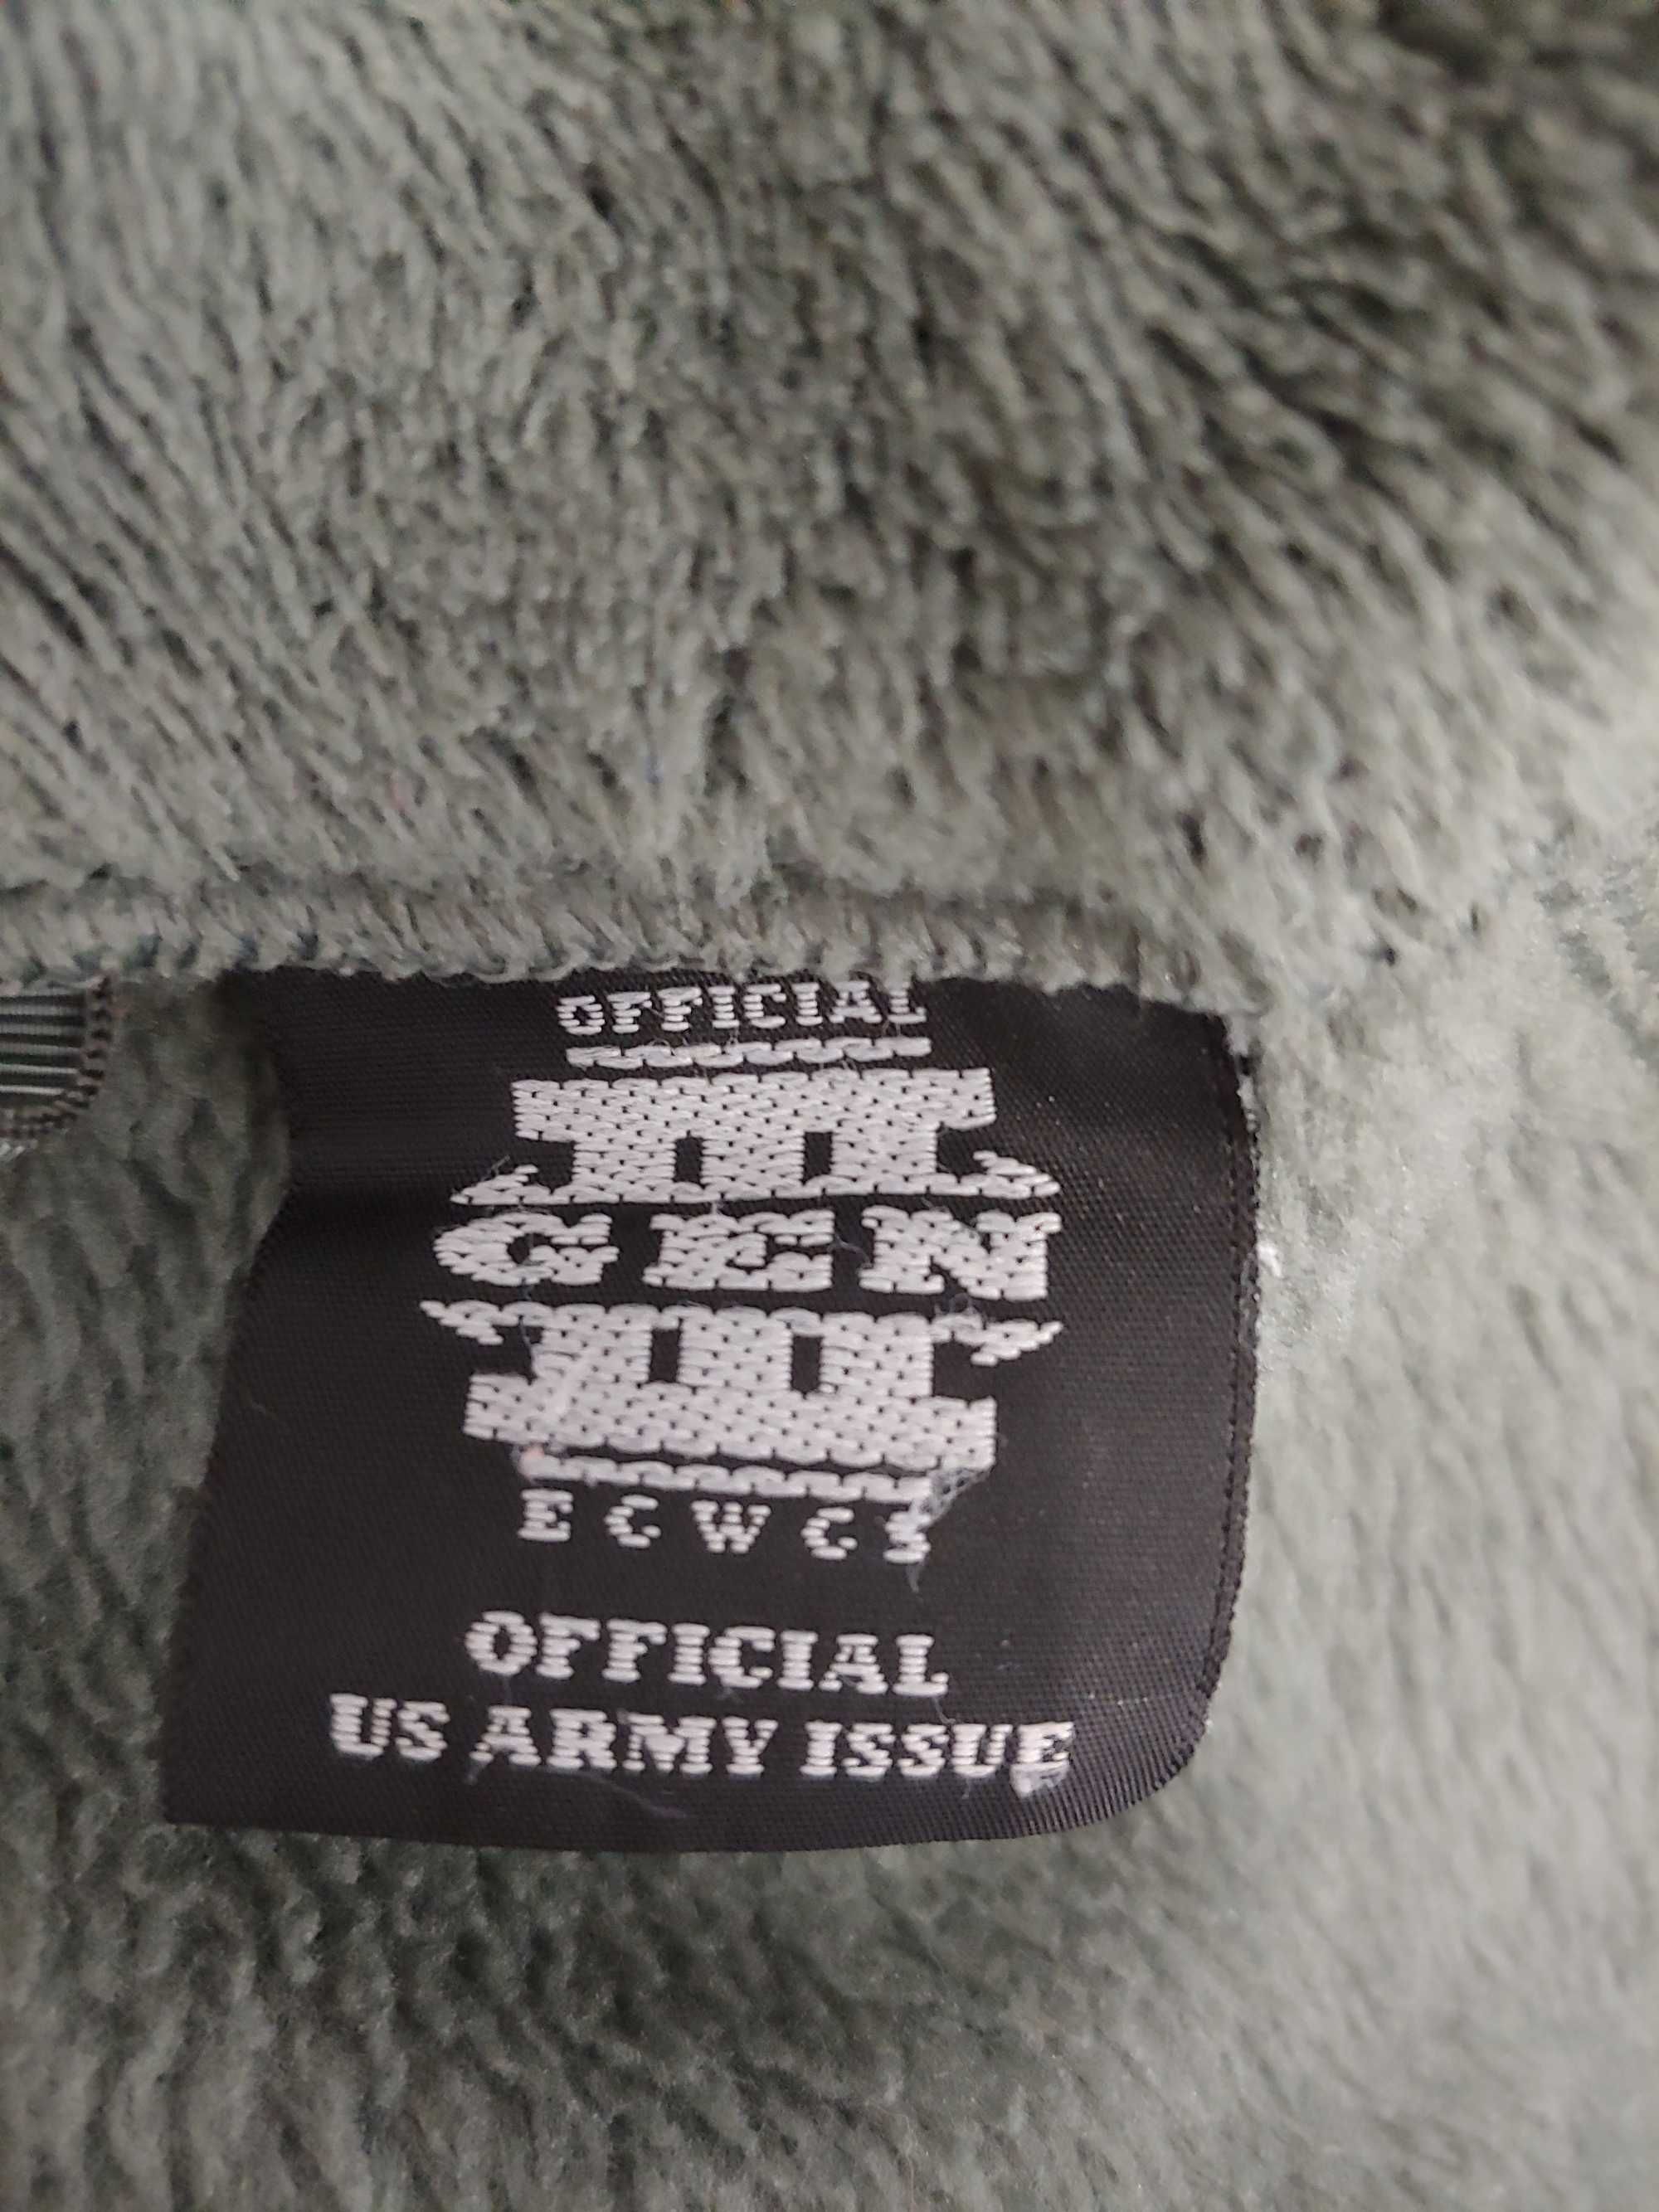 флісовий светр армії США GEN3 ECWCS ACU  Medium Large Long